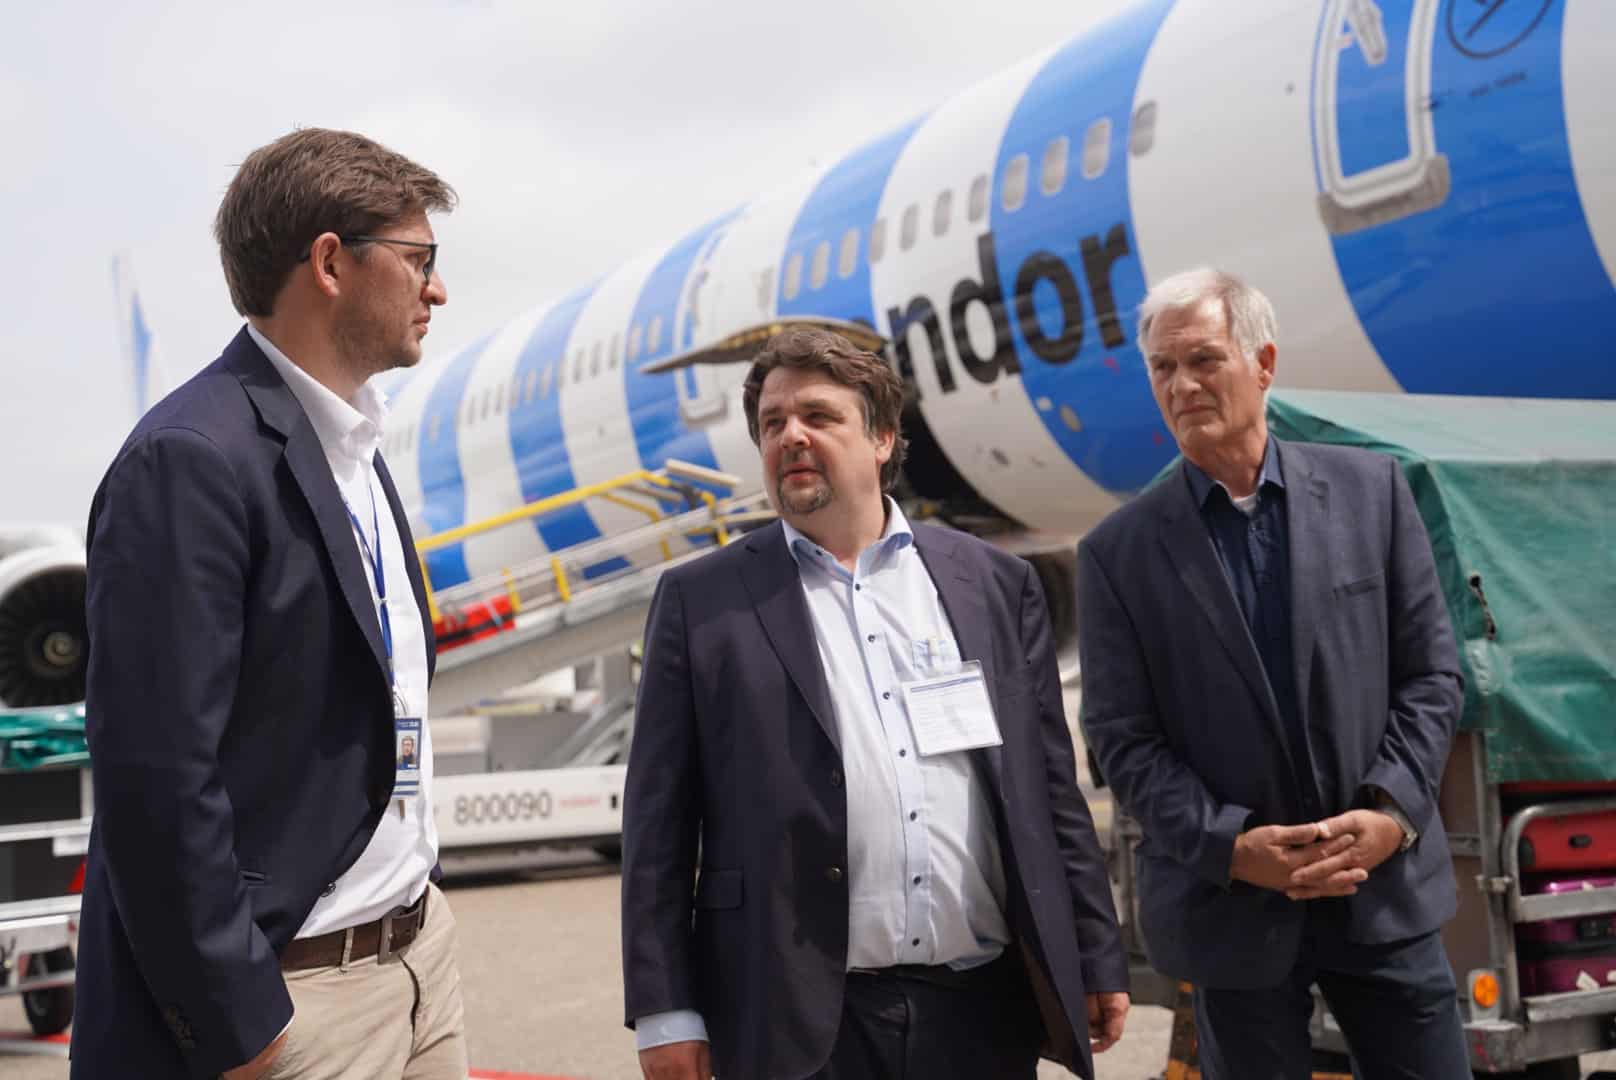 Dennis Radtke MEP in gesprek met vertegenwoordigers van de luchthavendirectie (van links naar rechts): Fabian Zachel (Head of Public Affairs), Dennis Radtke MEP (CDU), Peter Nengelten (Airport Neighborhood Office).